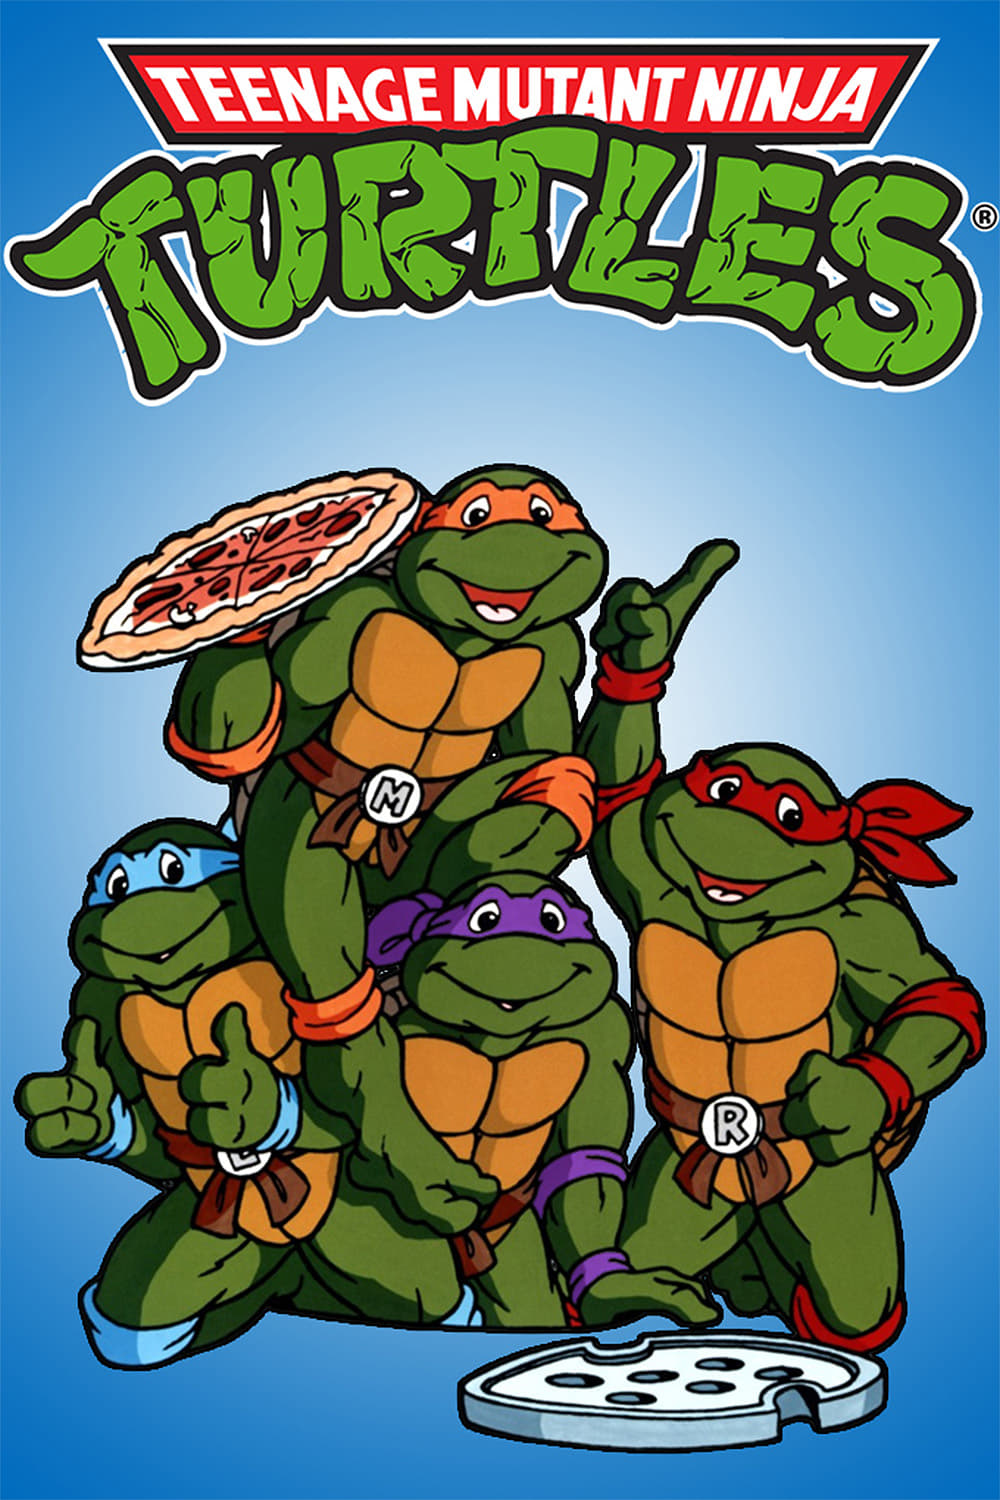 Teenage Mutant Ninja Turtles TV Shows About Mutant Animal